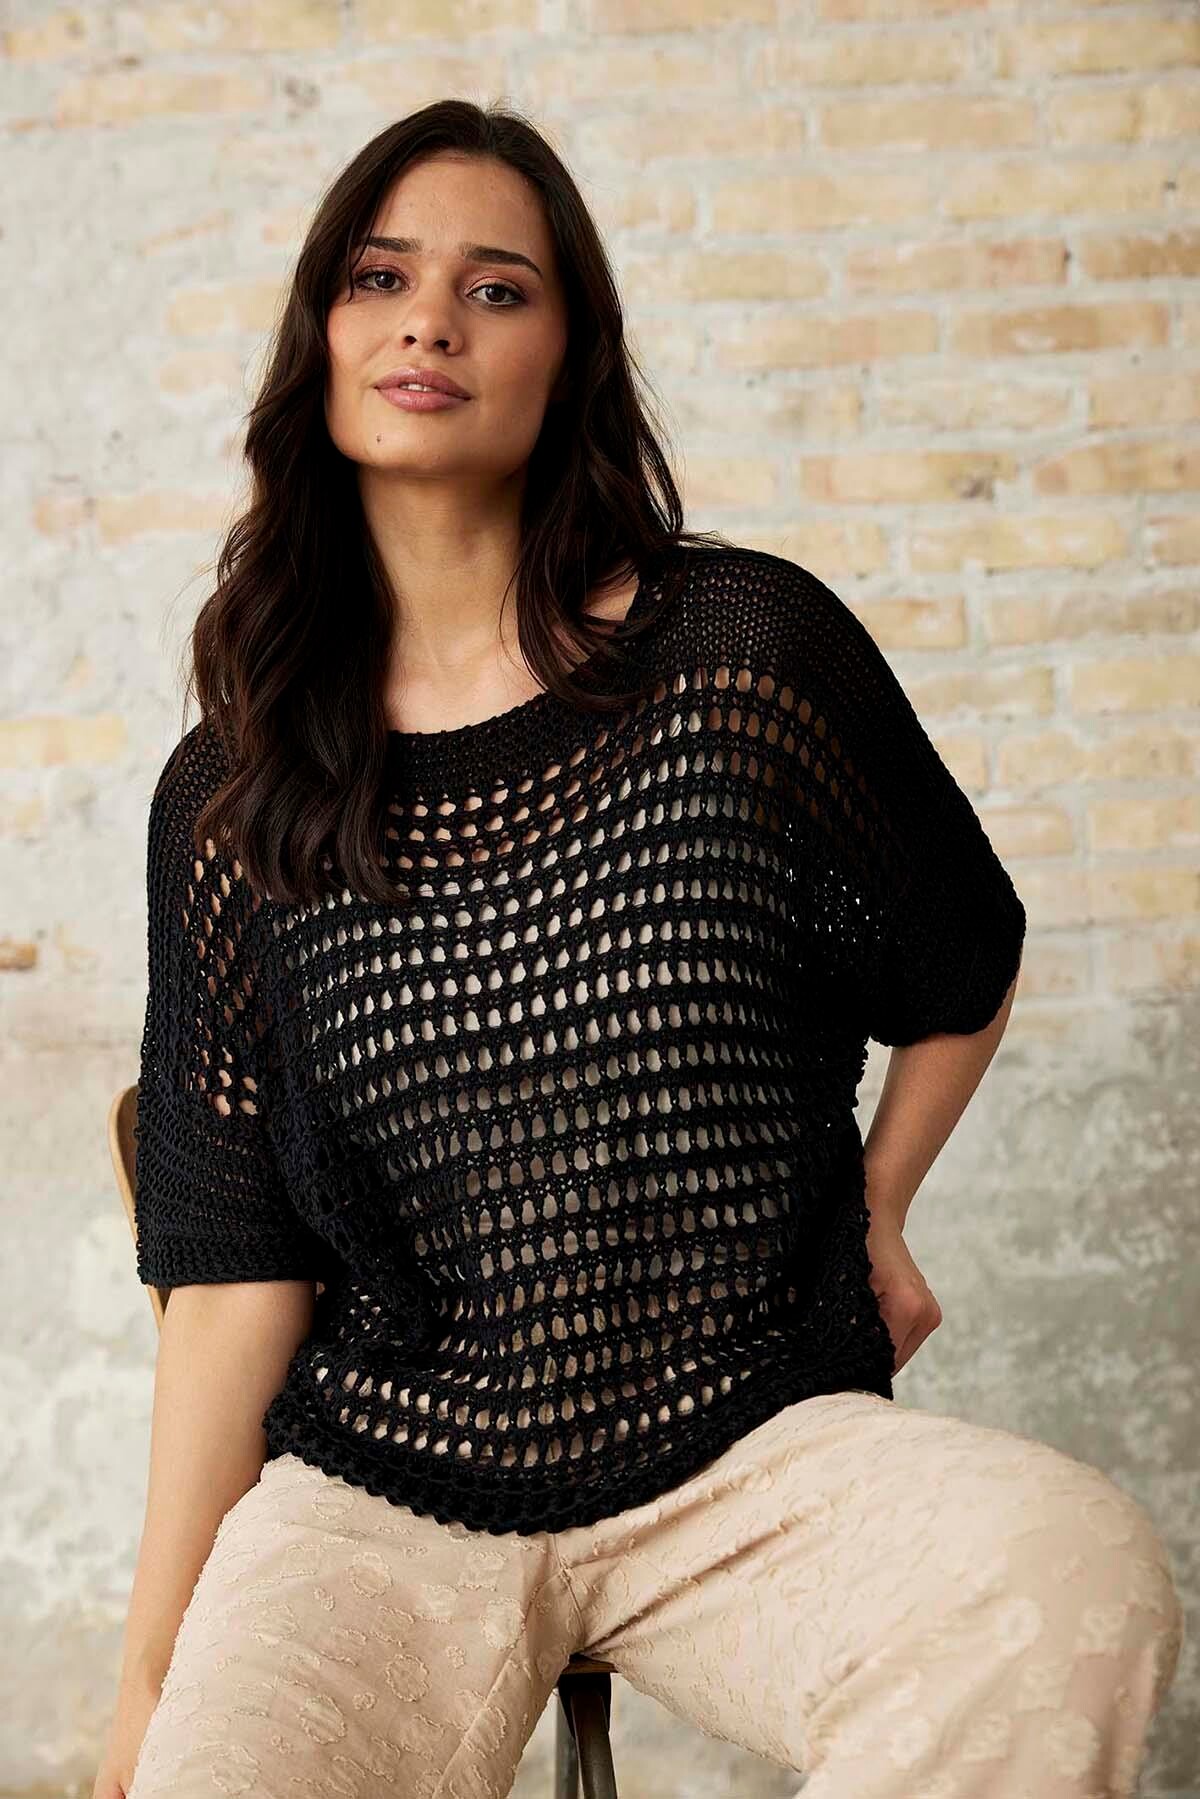 Se IN FRONT Nova Knit Bluse, Farve: Black, Størrelse: L/XL, Dame hos Infront Women